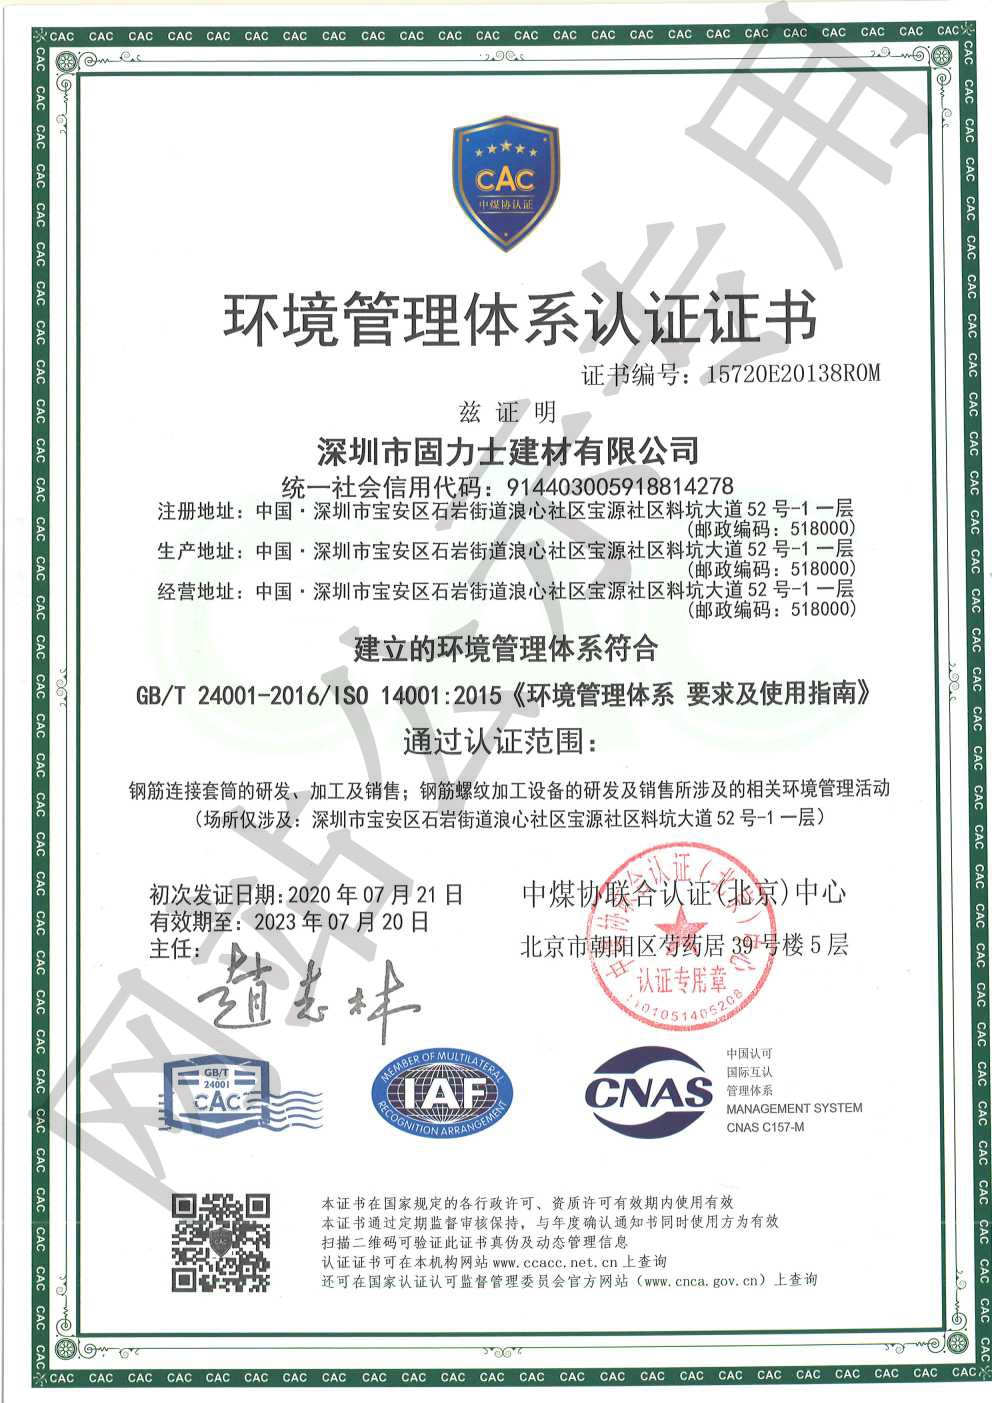 古浪ISO14001证书